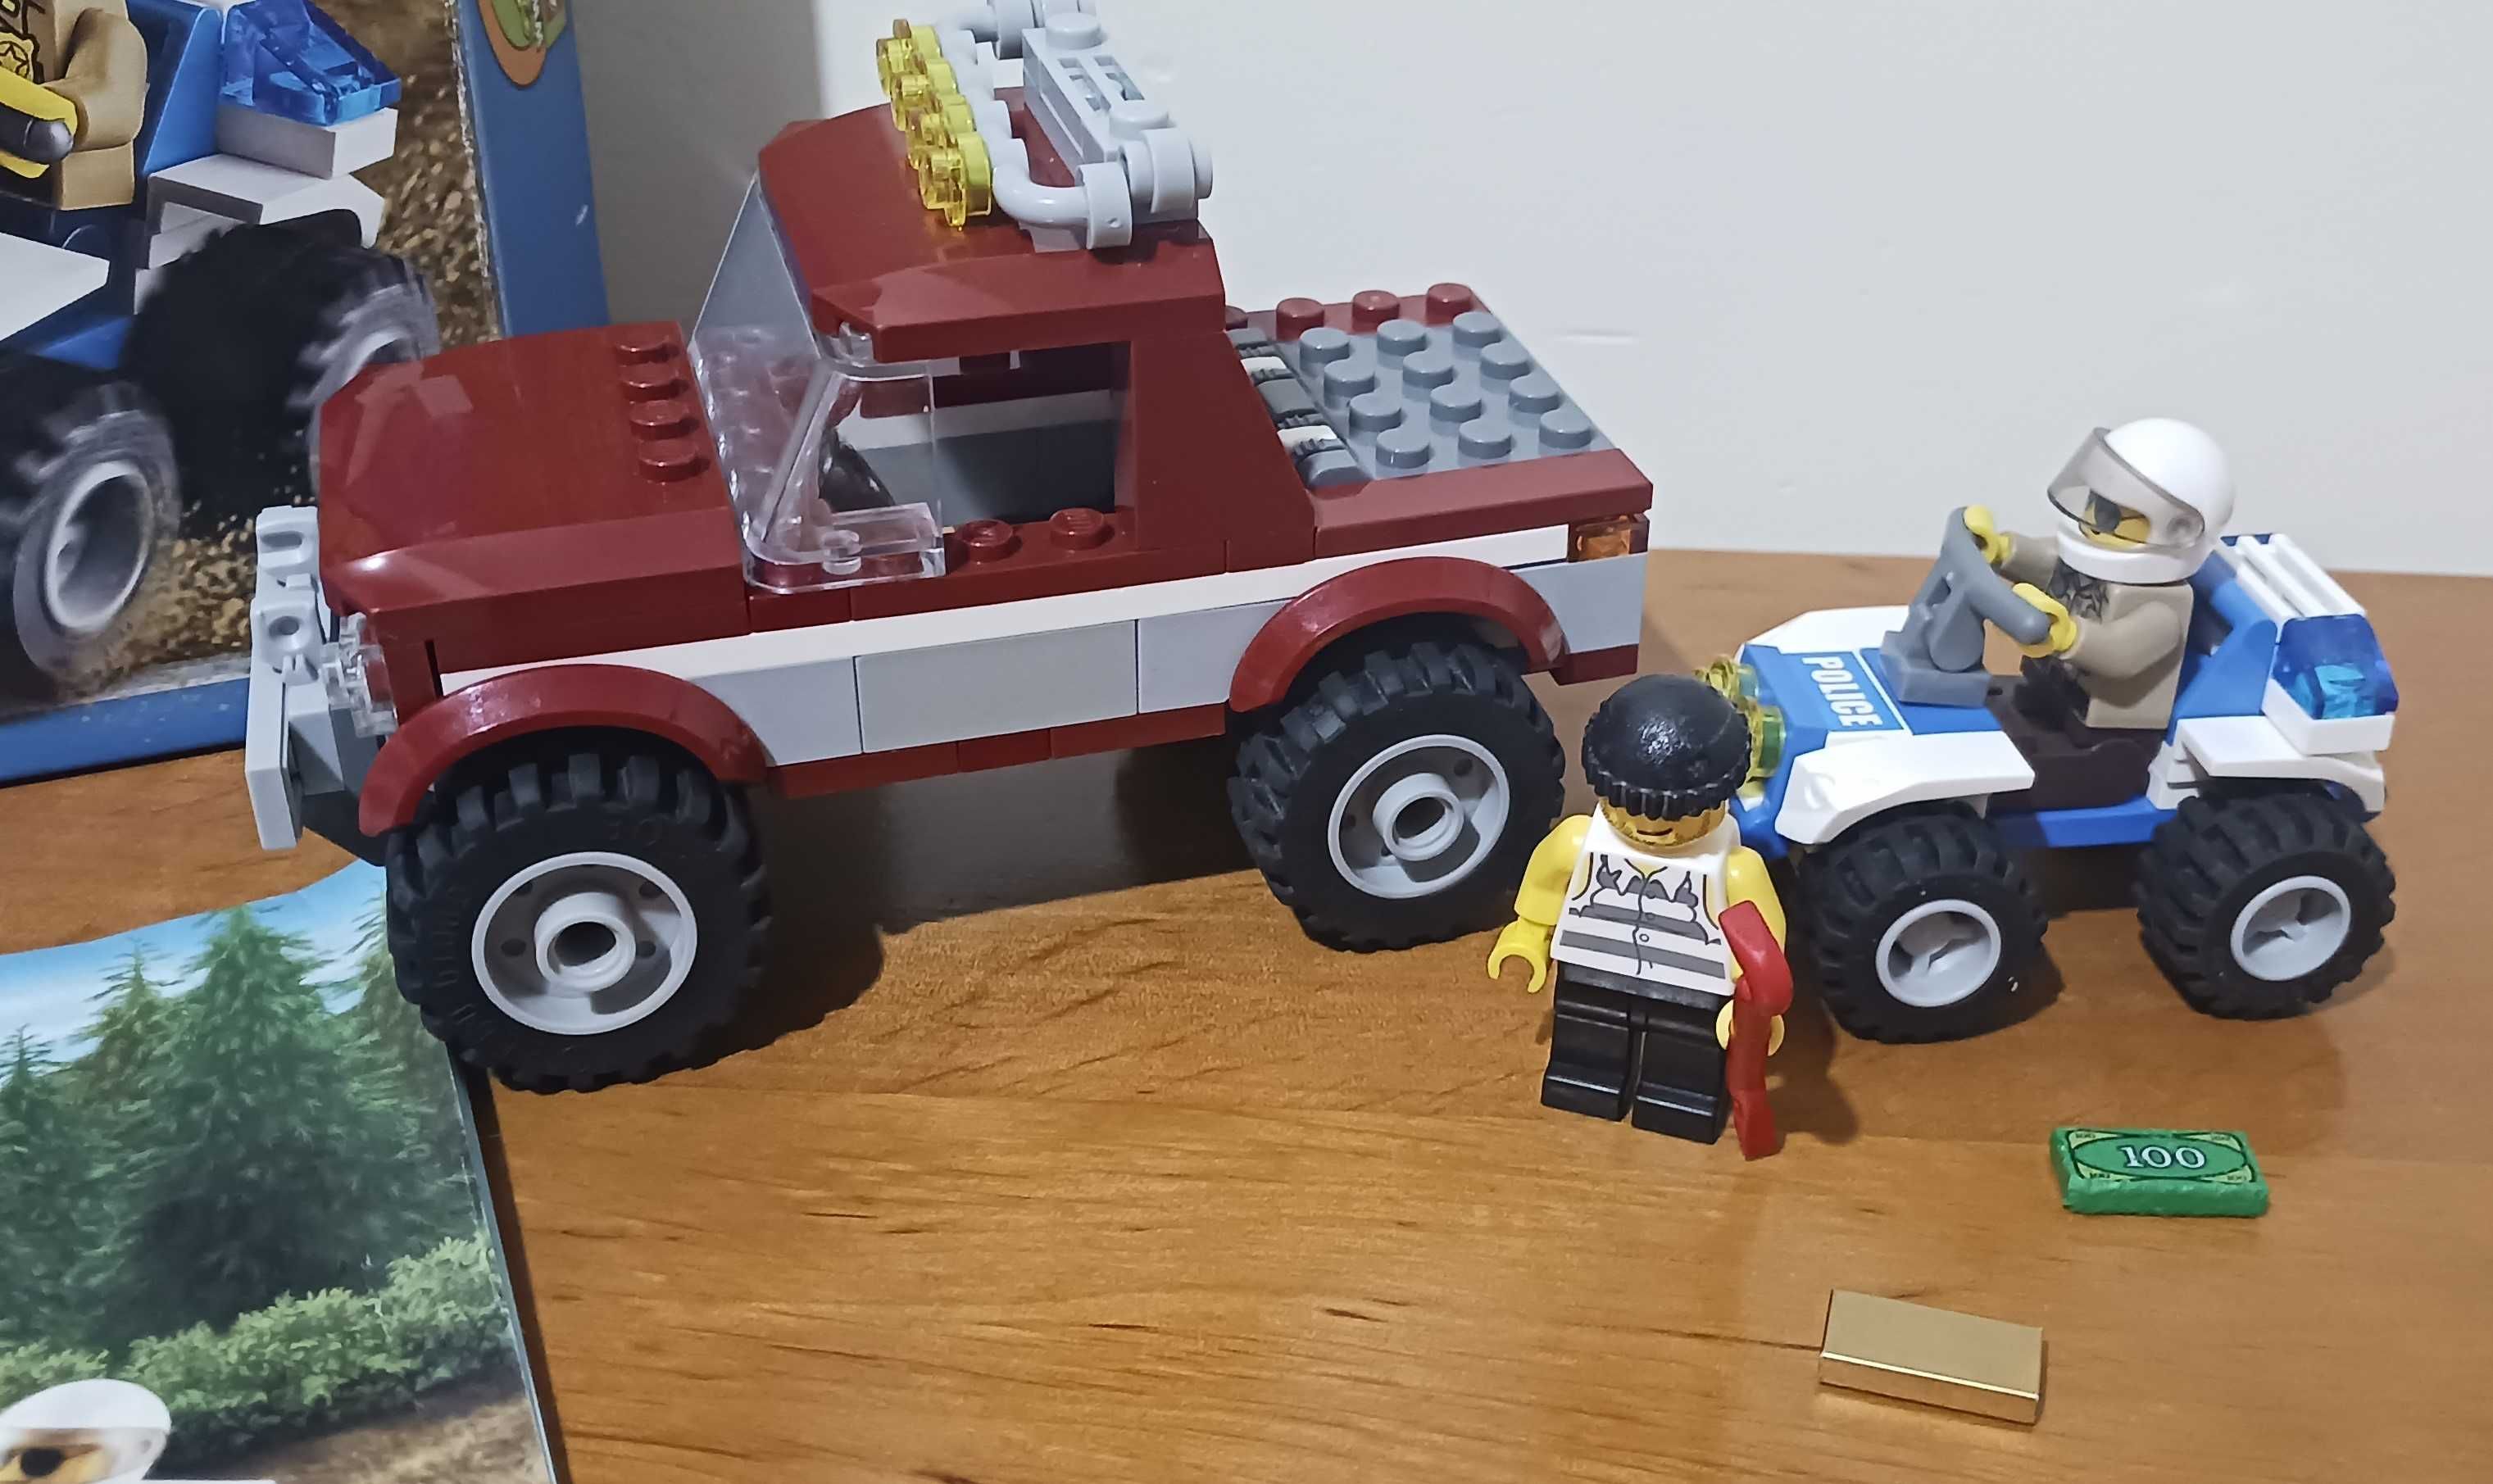 Lego City 4437 Policyjny pościg + pudełko + instrukcja